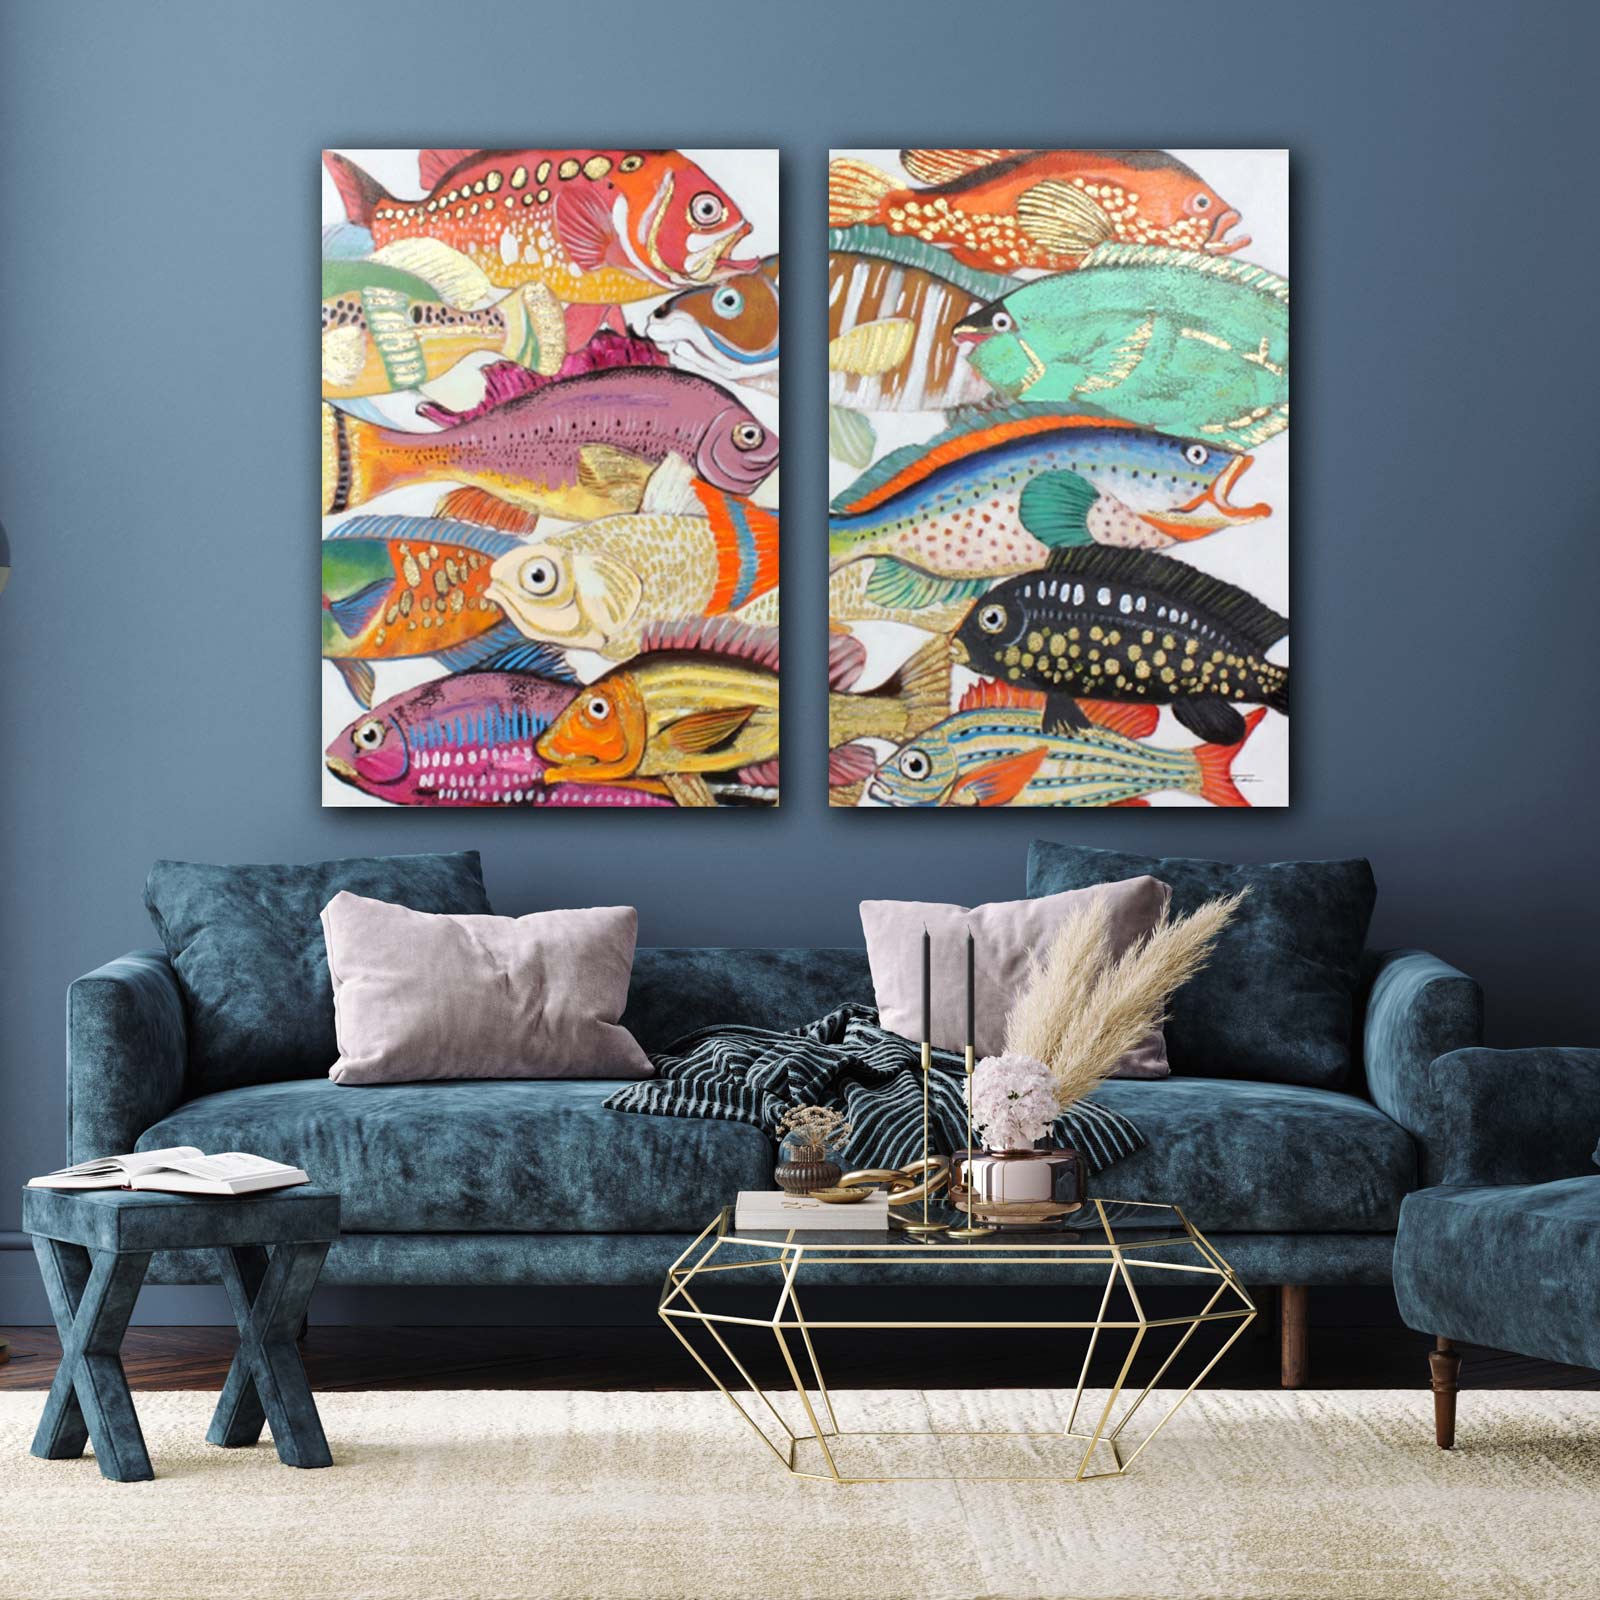 2er-Set Bild Fische Colorful Fishes, handgemalt, Acryl auf Leinwand